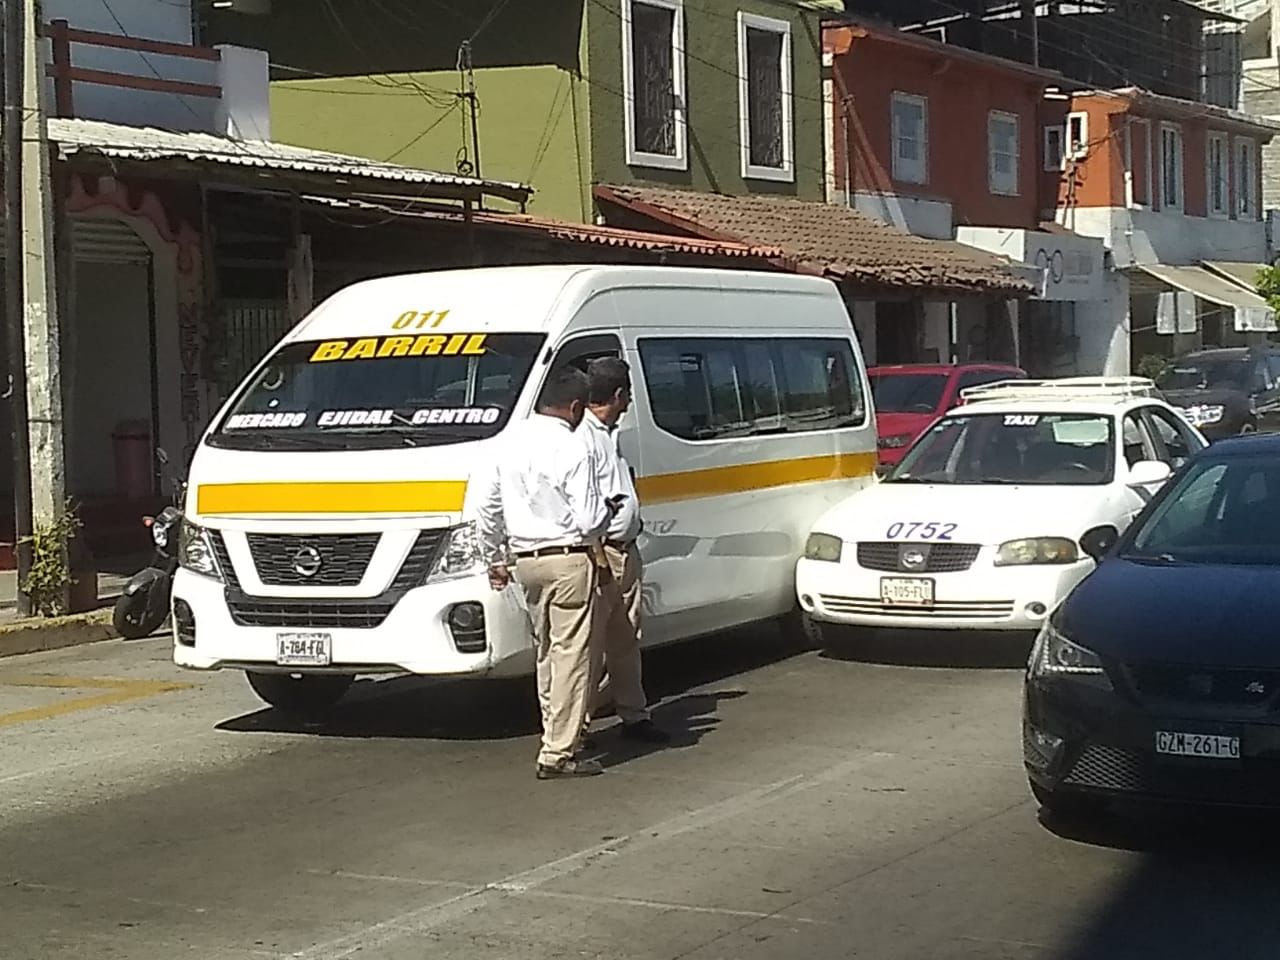 Urvan y taxi implicados en choque en avenida de Zihuatanejo